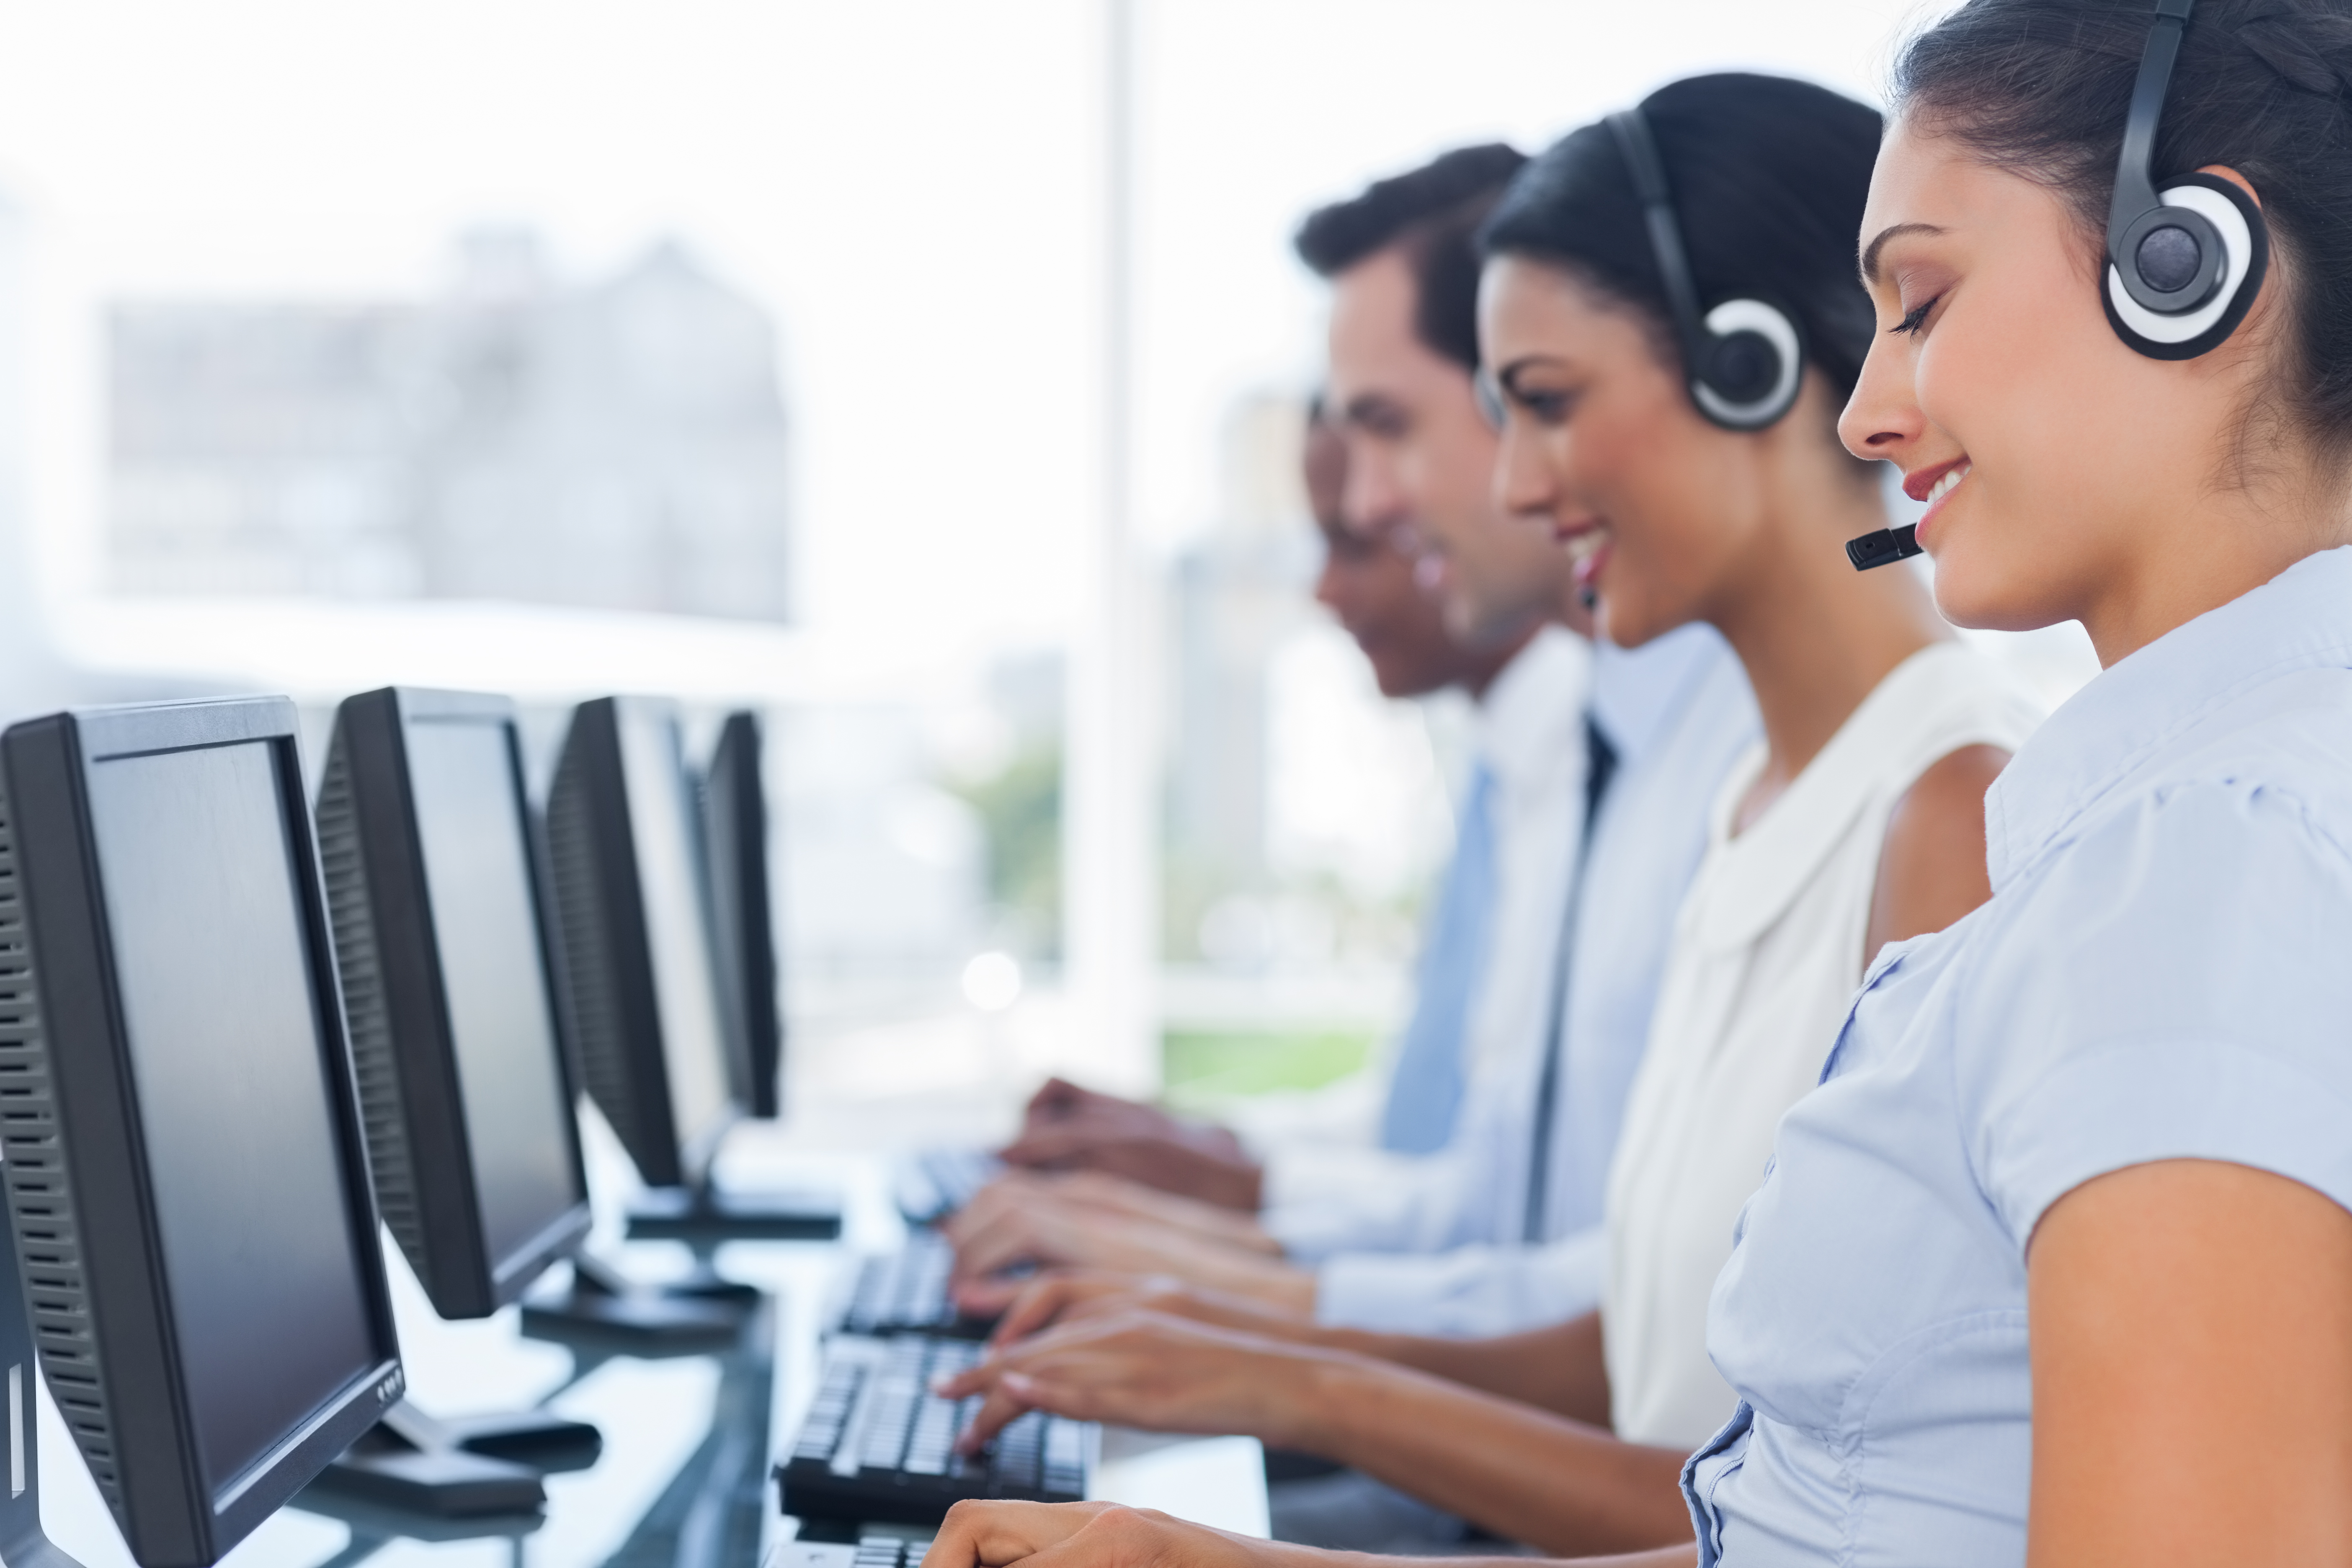 El 85% de los puestos en call centers son operativos y no son flexibles al teletrabajo. (Foto Prensa Libre: Shutterstock)